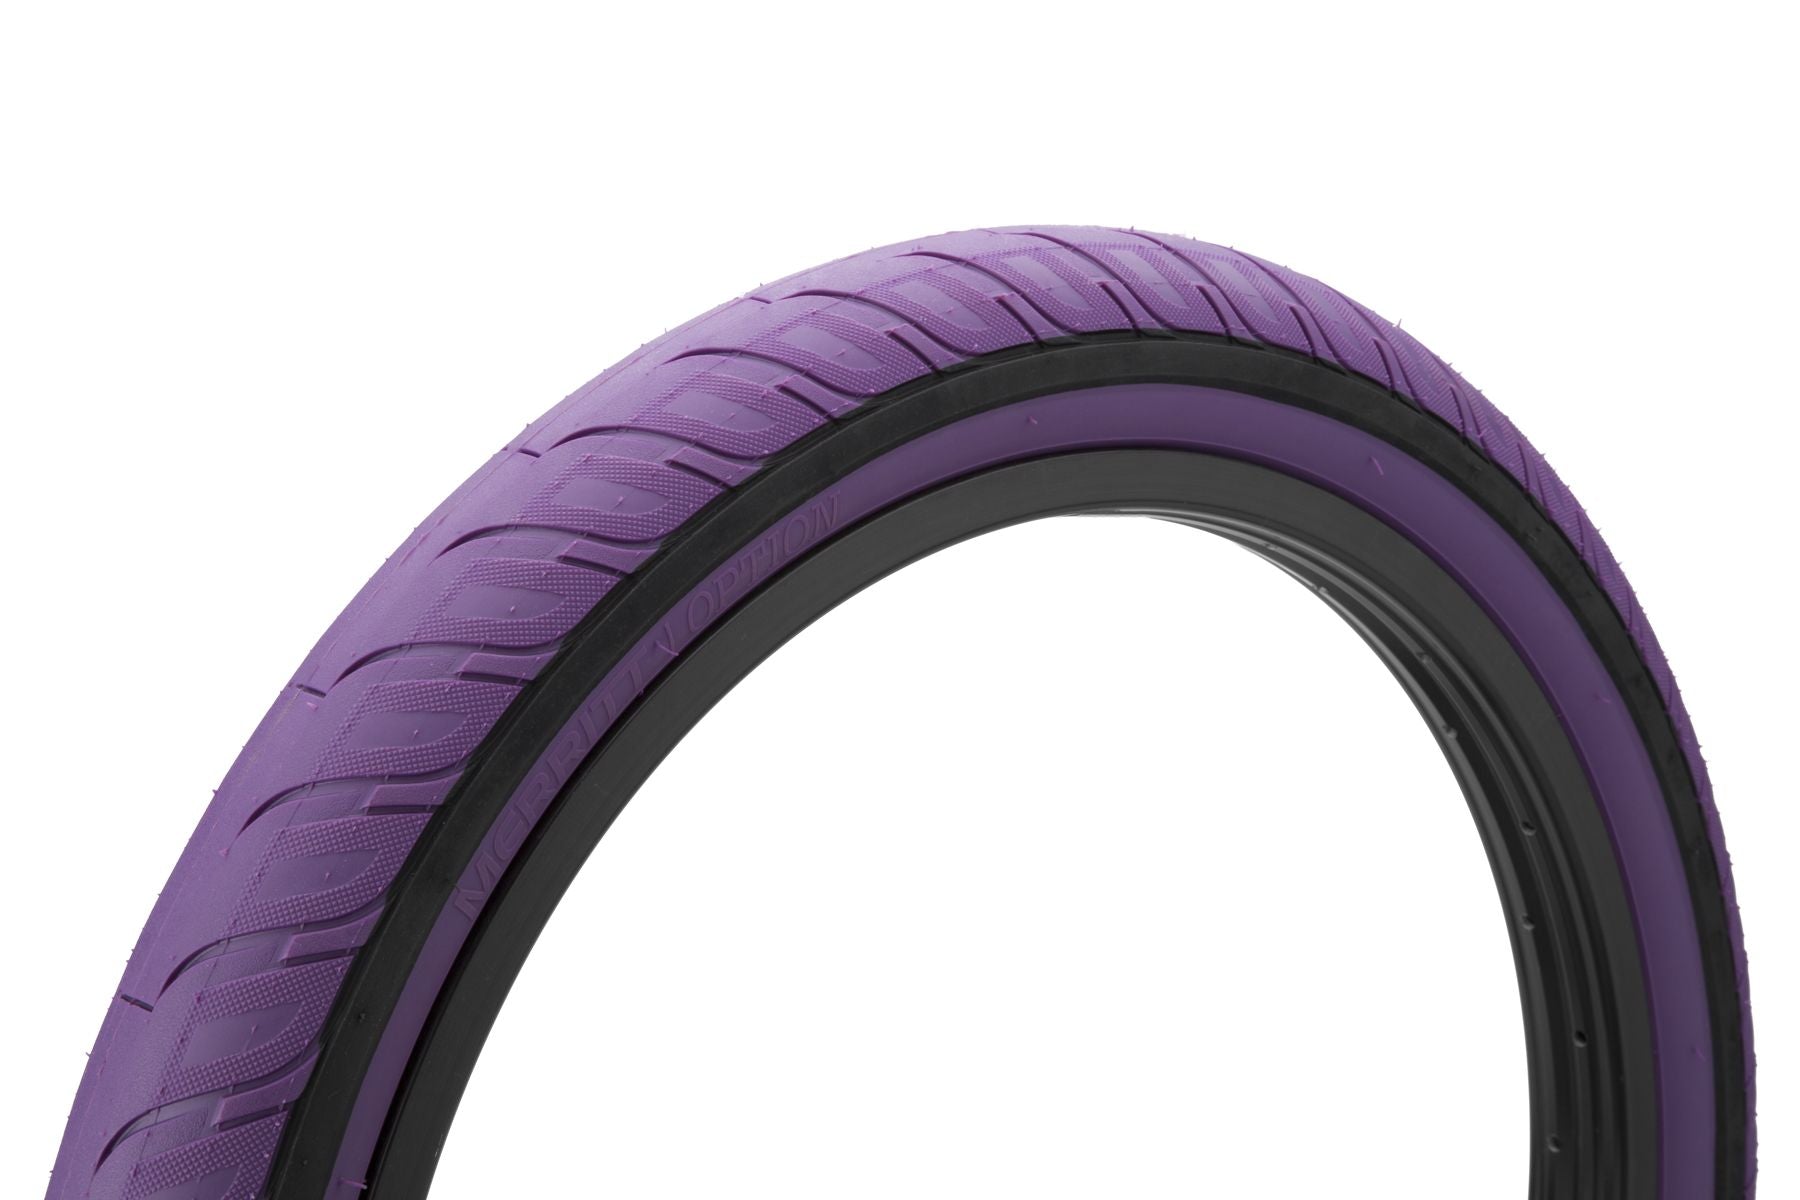 20x2.35 Merritt BMX Option "Slidewall" Tire - 110psi - Purple & Black